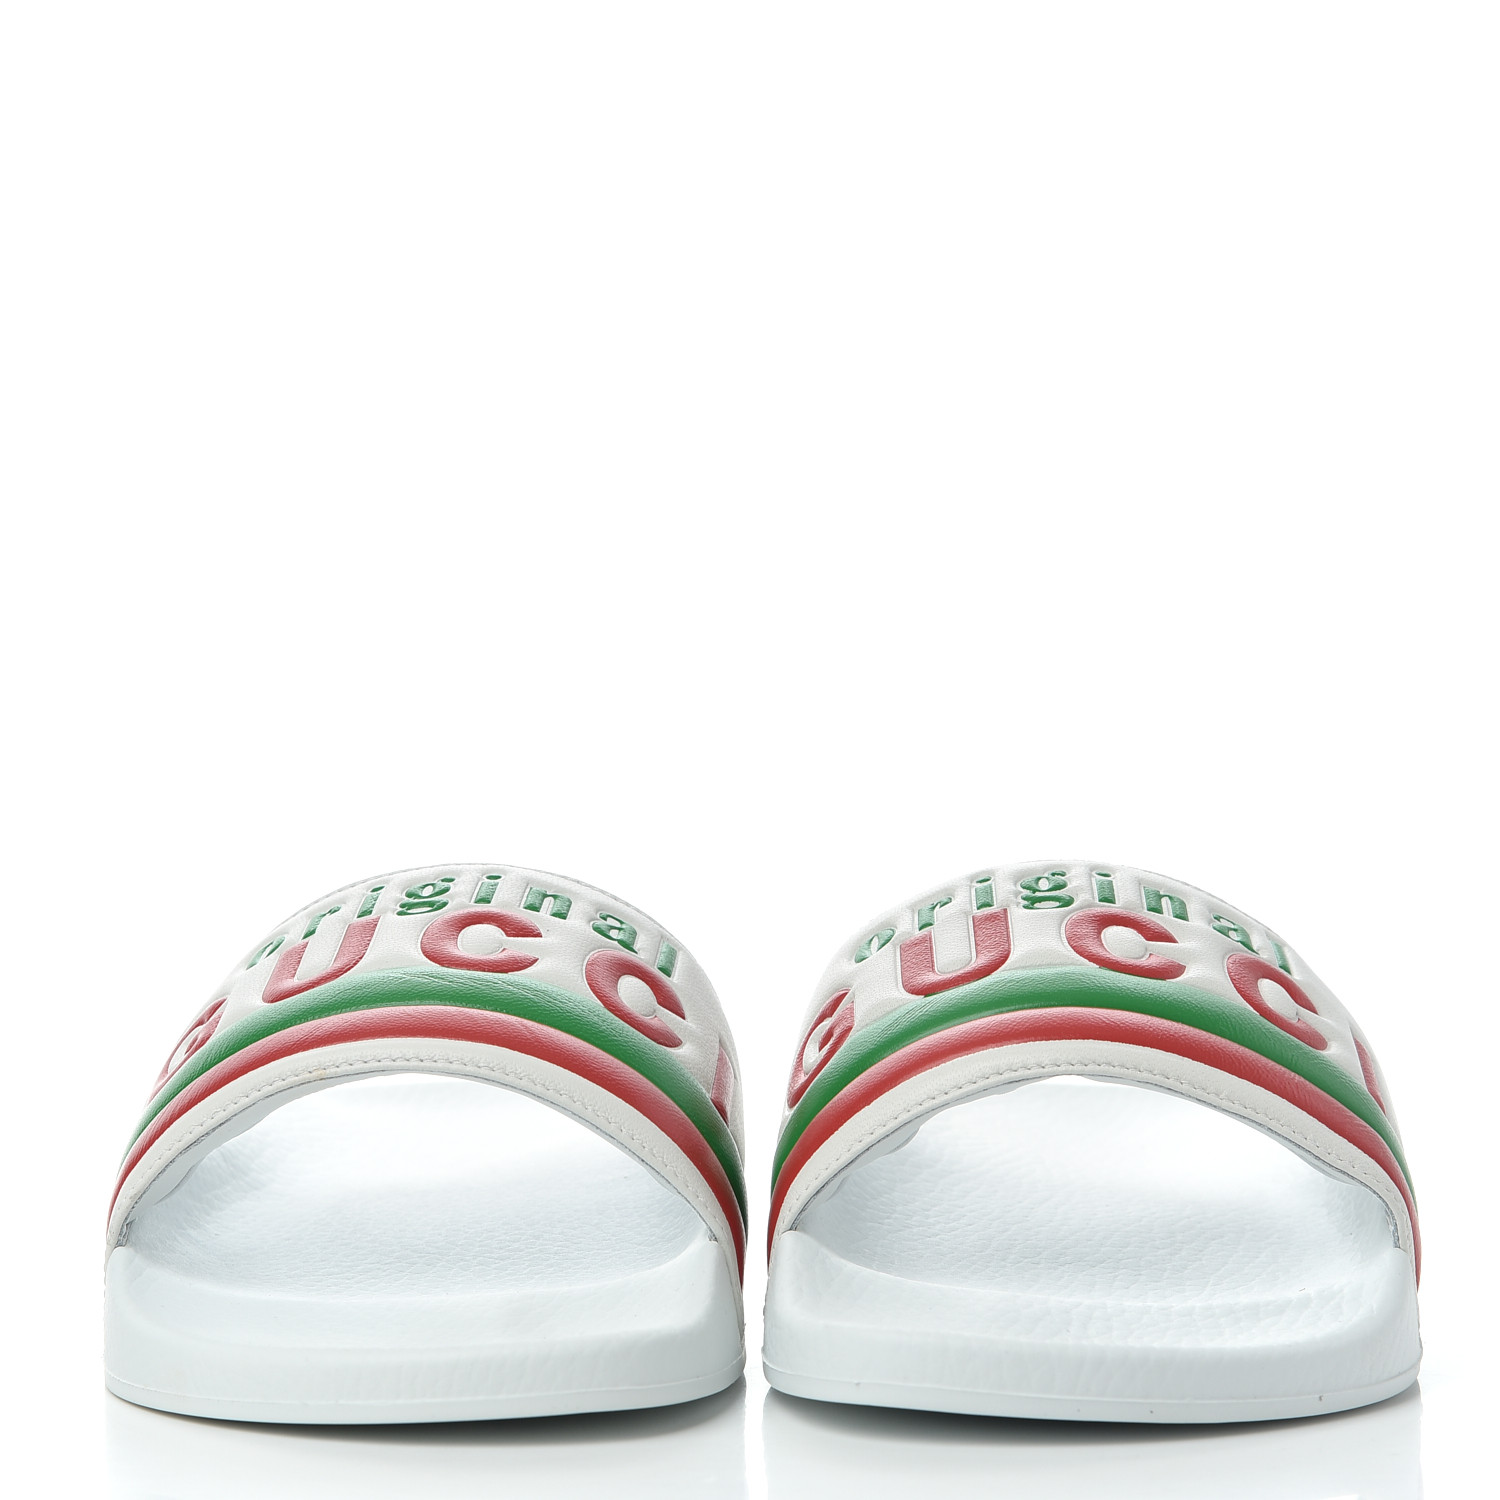 GUCCI Nappa Original Gucci Mens Slide Sandals 11 White 774688 ...